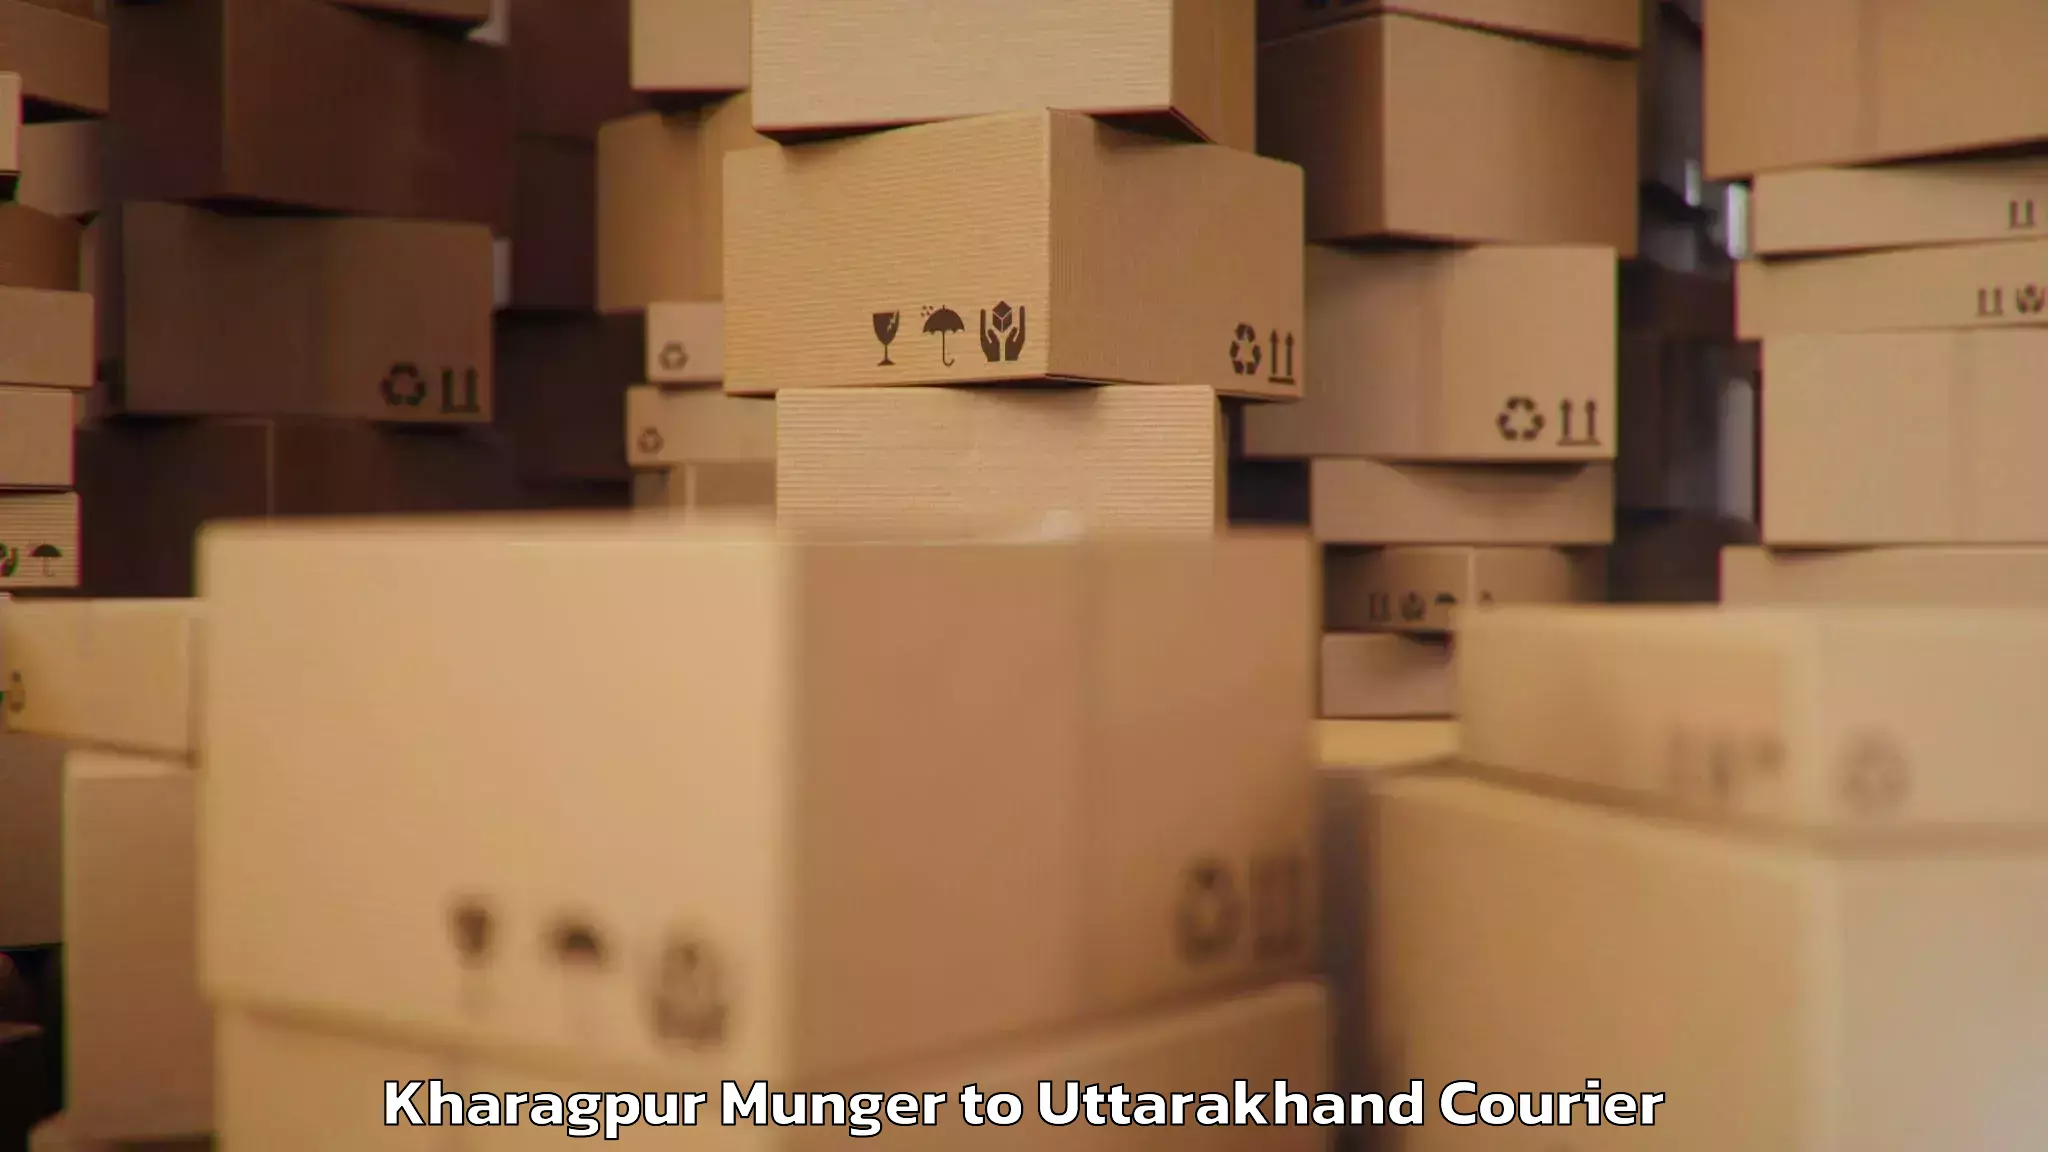 Baggage transport network Kharagpur Munger to Nainital